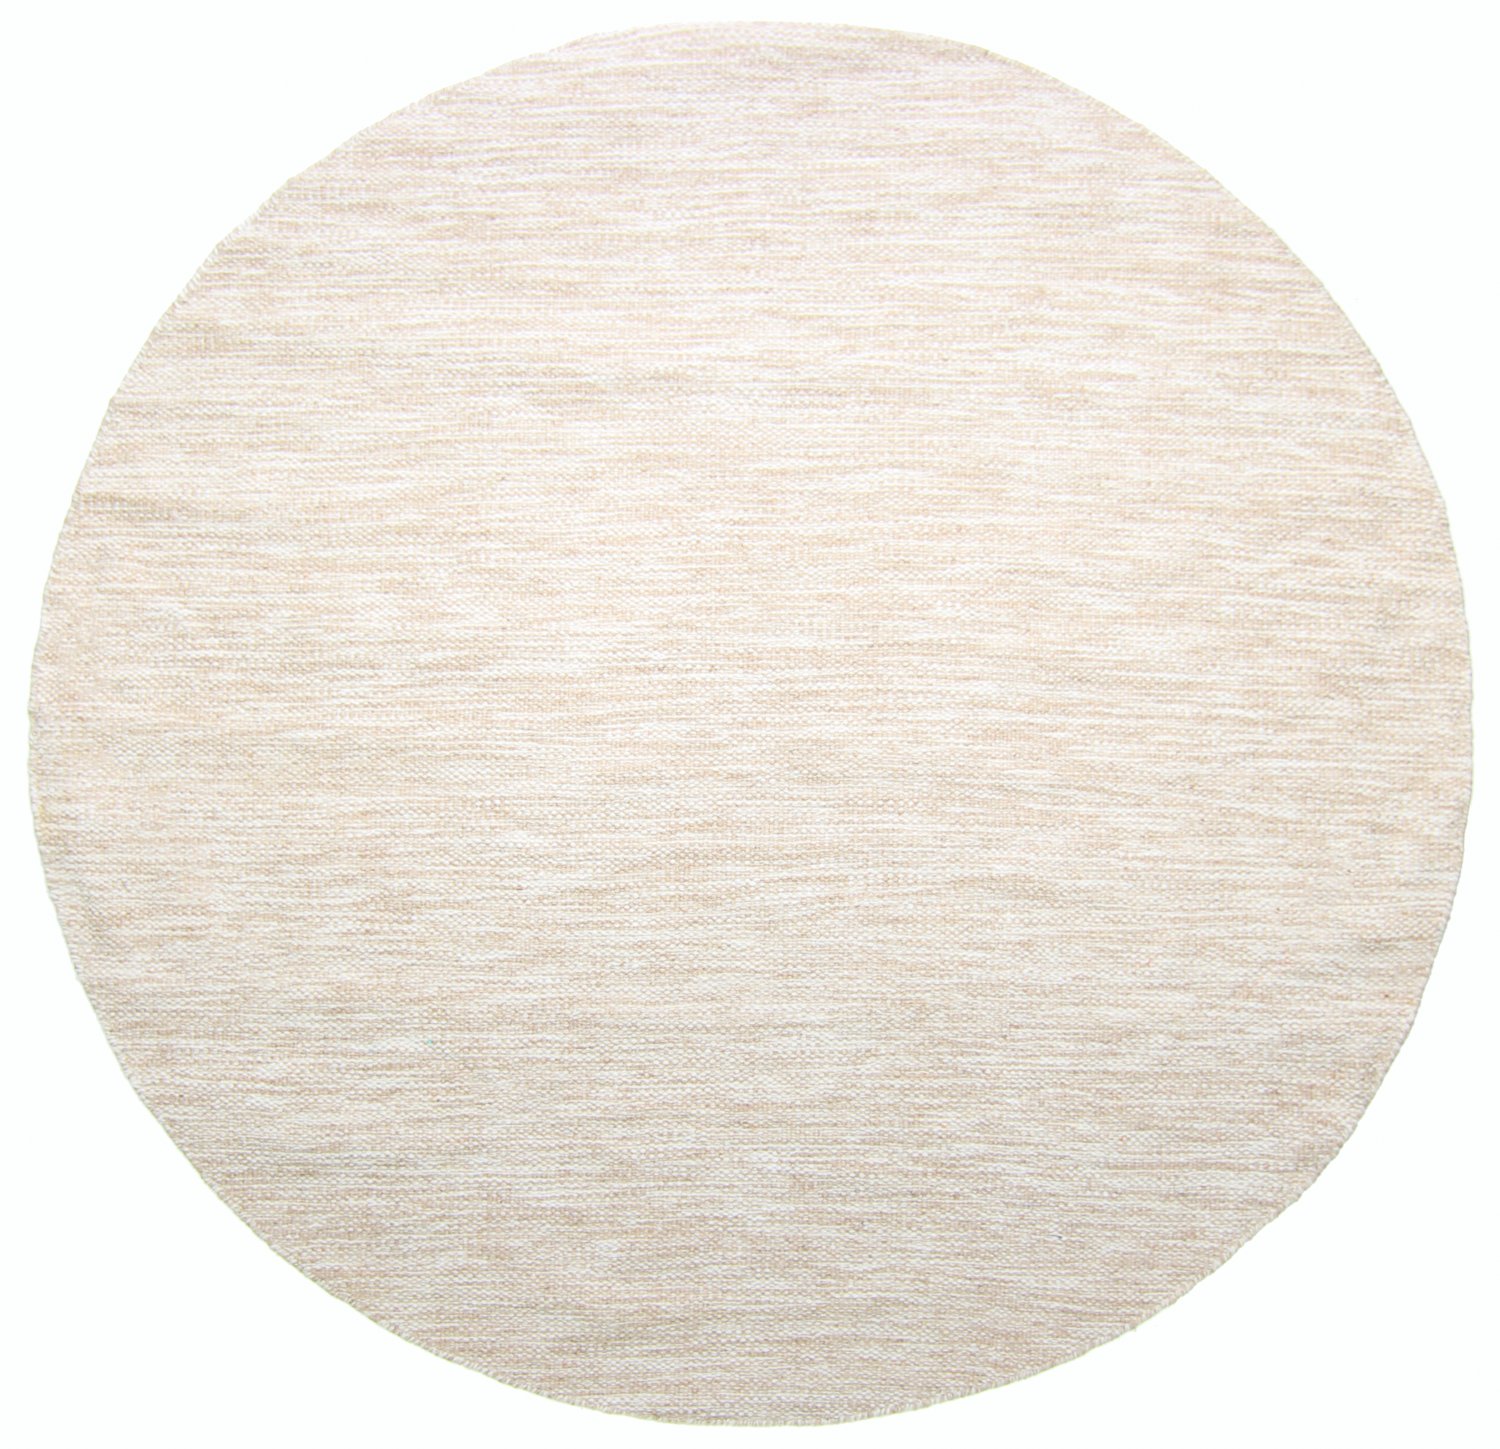 Round rug - Savona (beige)